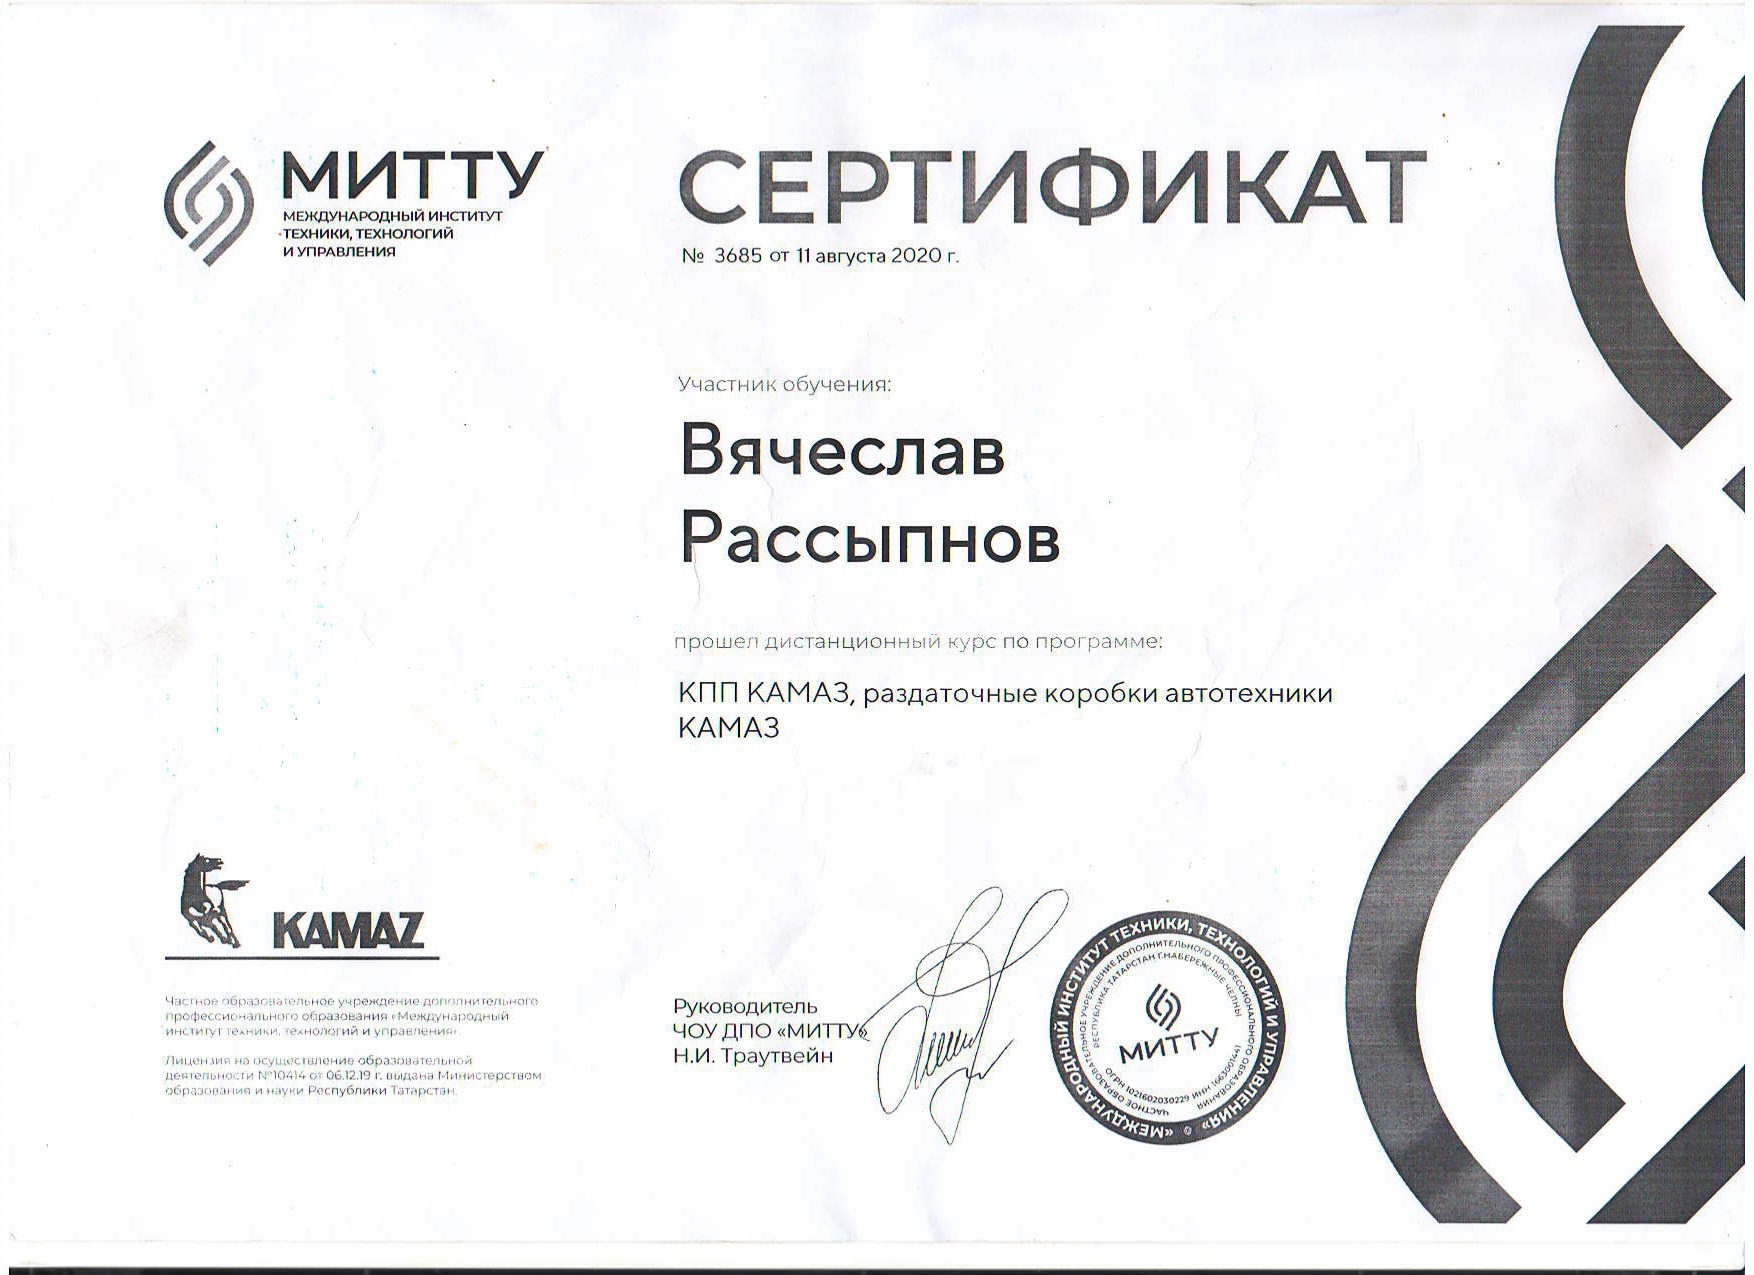 Сертификат РАССЫПНОВ